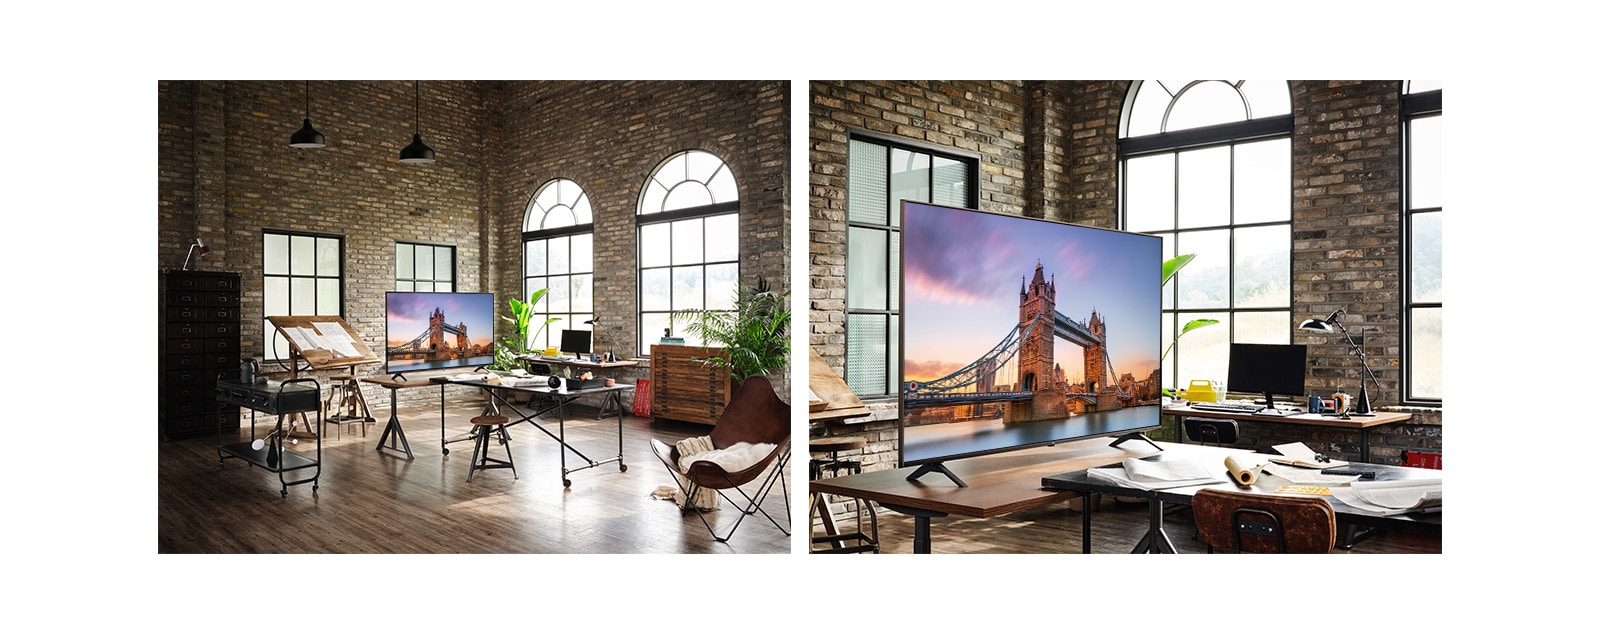 Телевизор с изображением Лондонского моста в комнате с античным интерьером. Крупный план телевизора с изображением Лондонского моста на столе в комнате с античным интерьером.